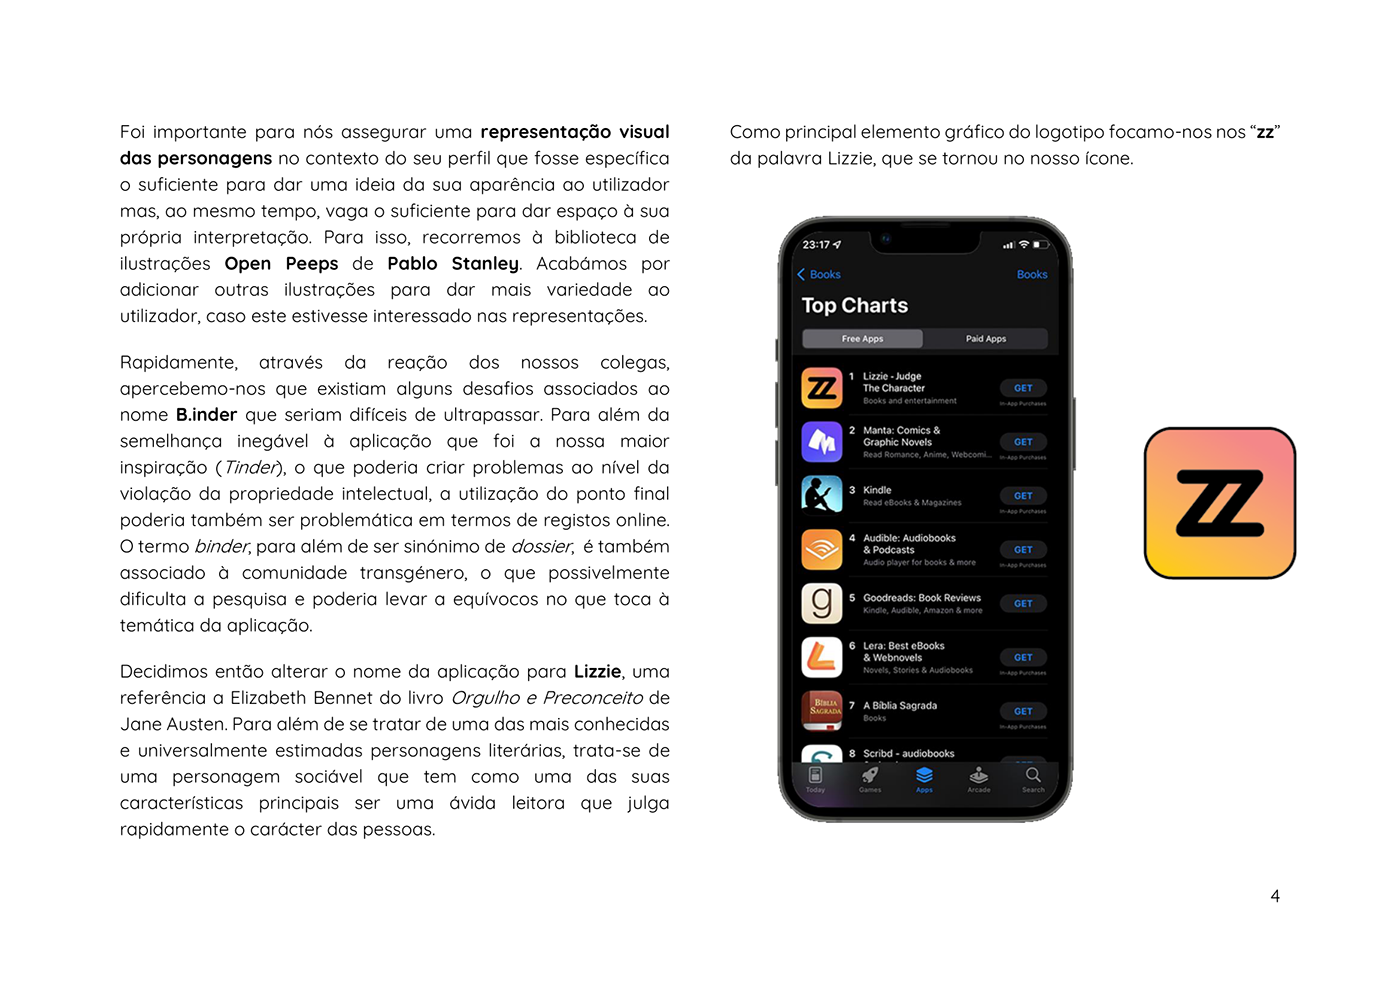 design Graphic Designer visual identity UI/UX ui design Mobile app user experience Case Study portuguese